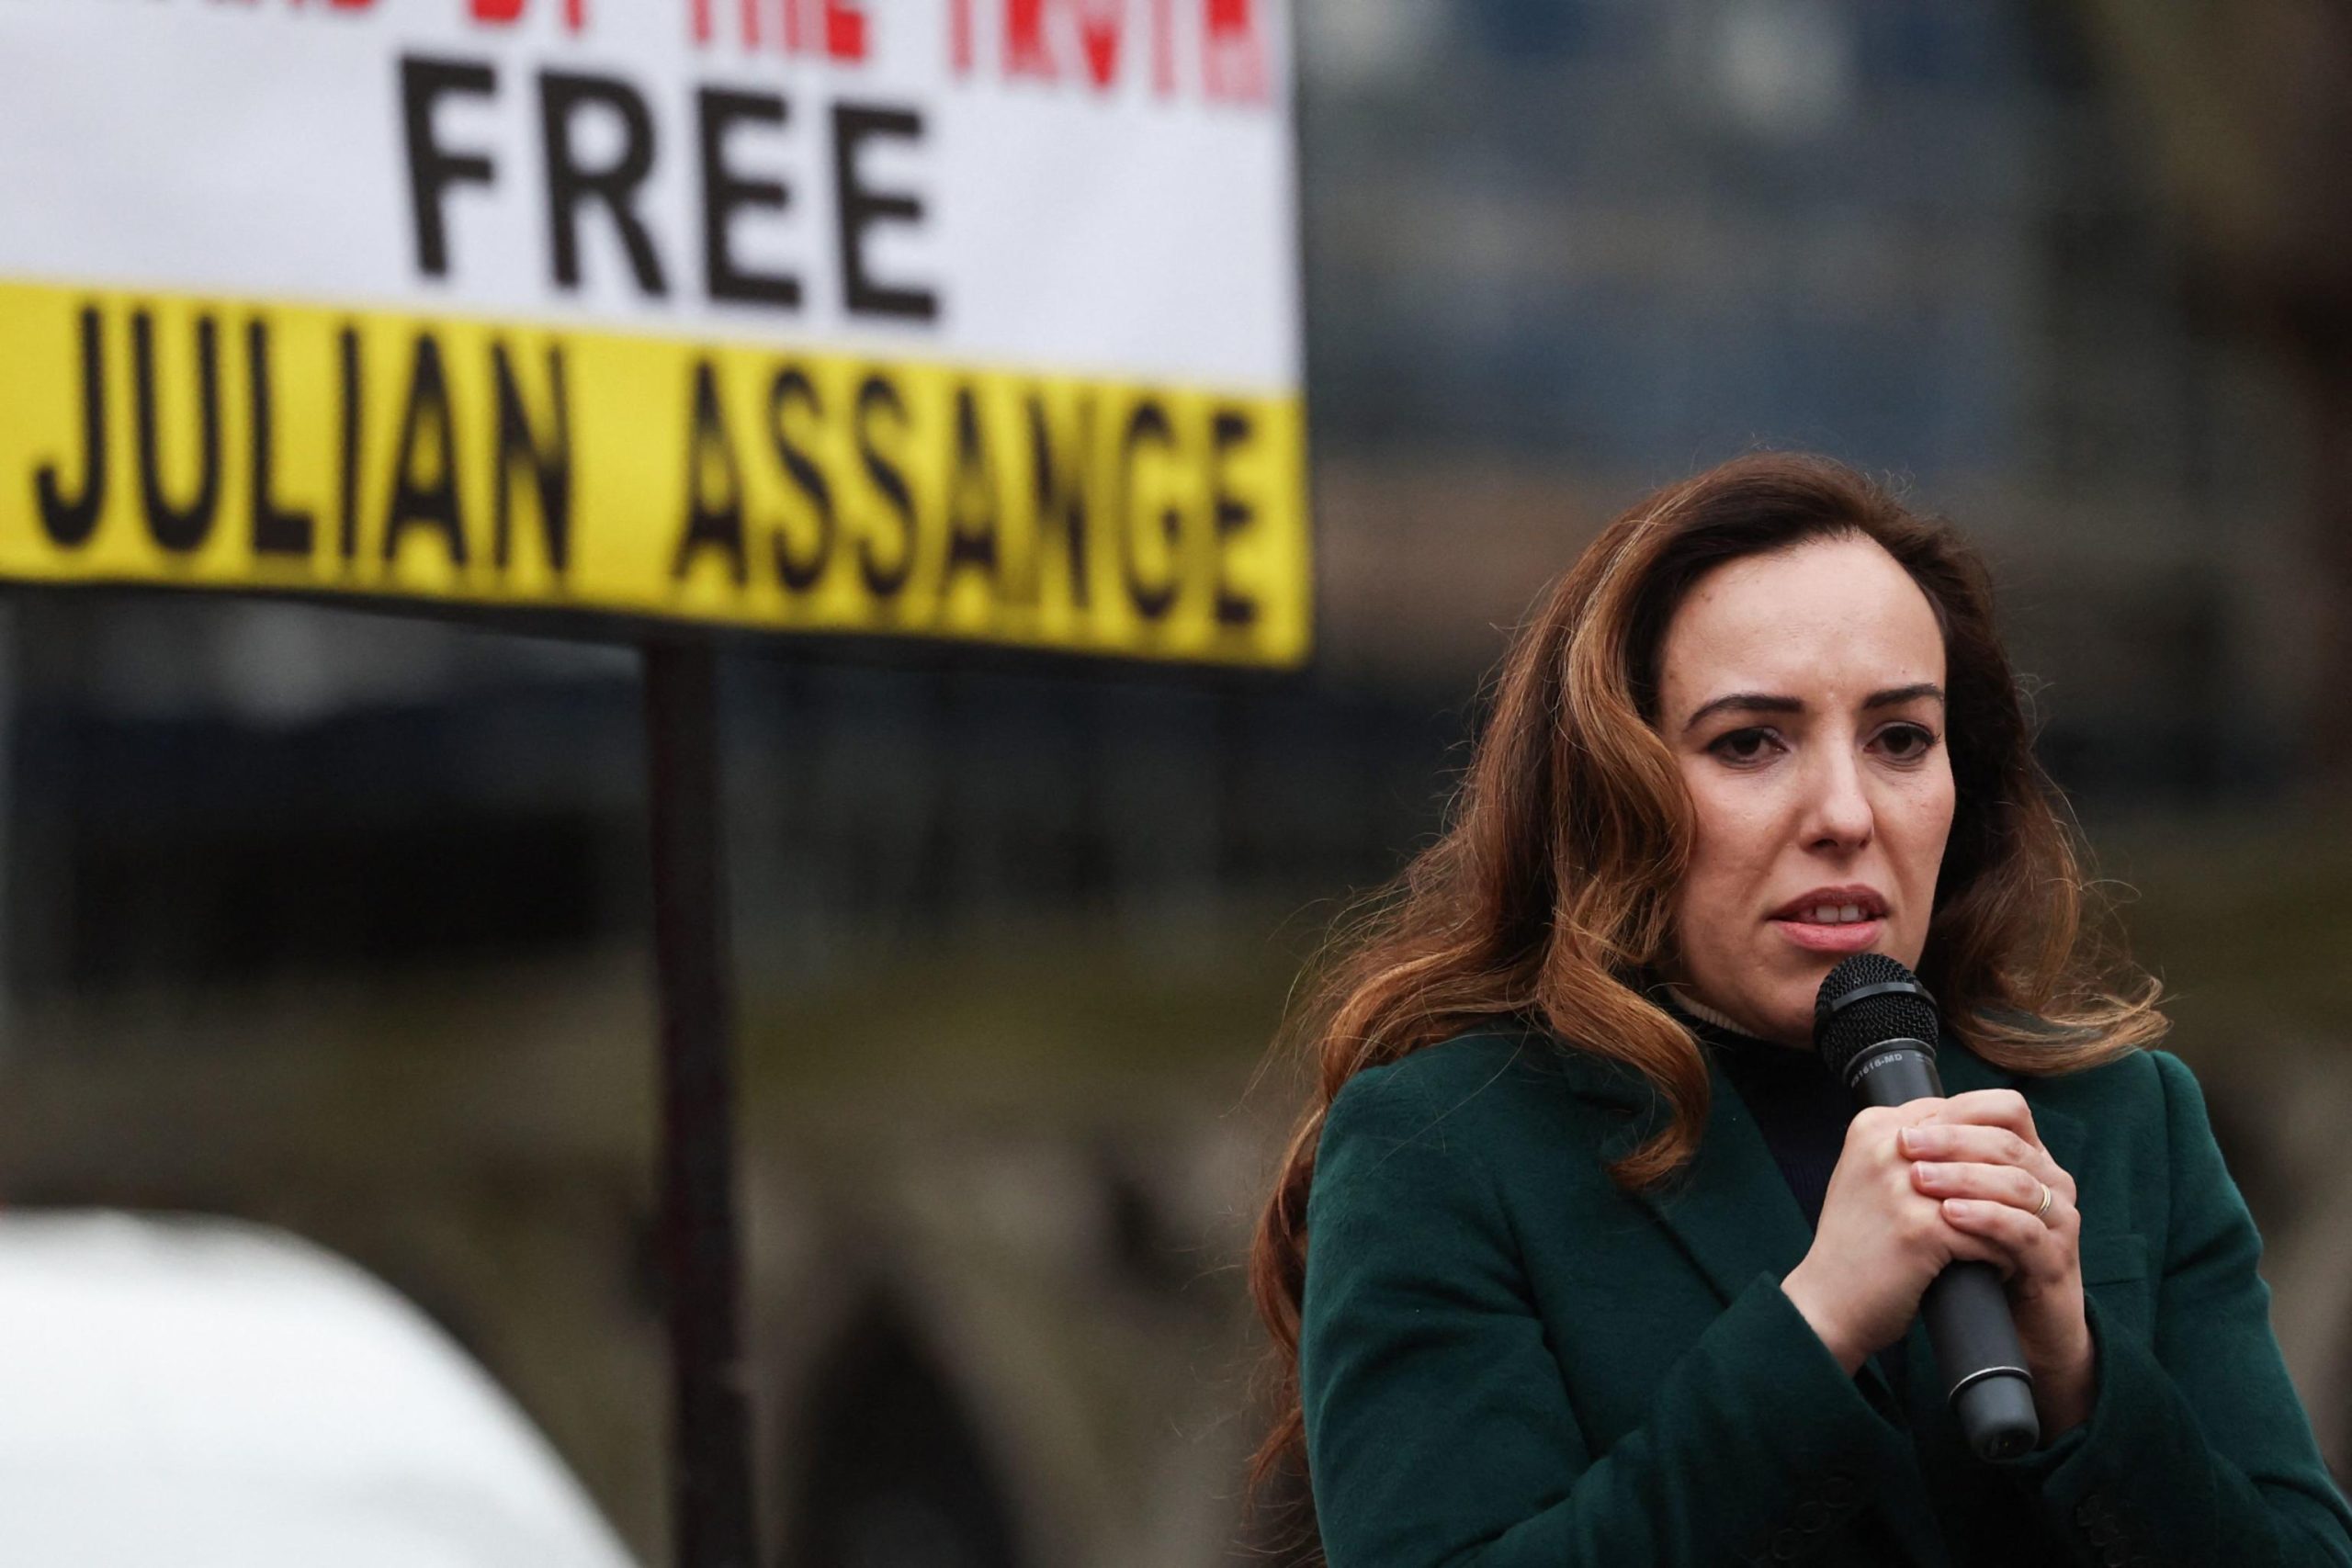 Stella Assange, moglie di Julian Assange mentre parla alla manifestazione davanti alla Royal Courts of Justice.